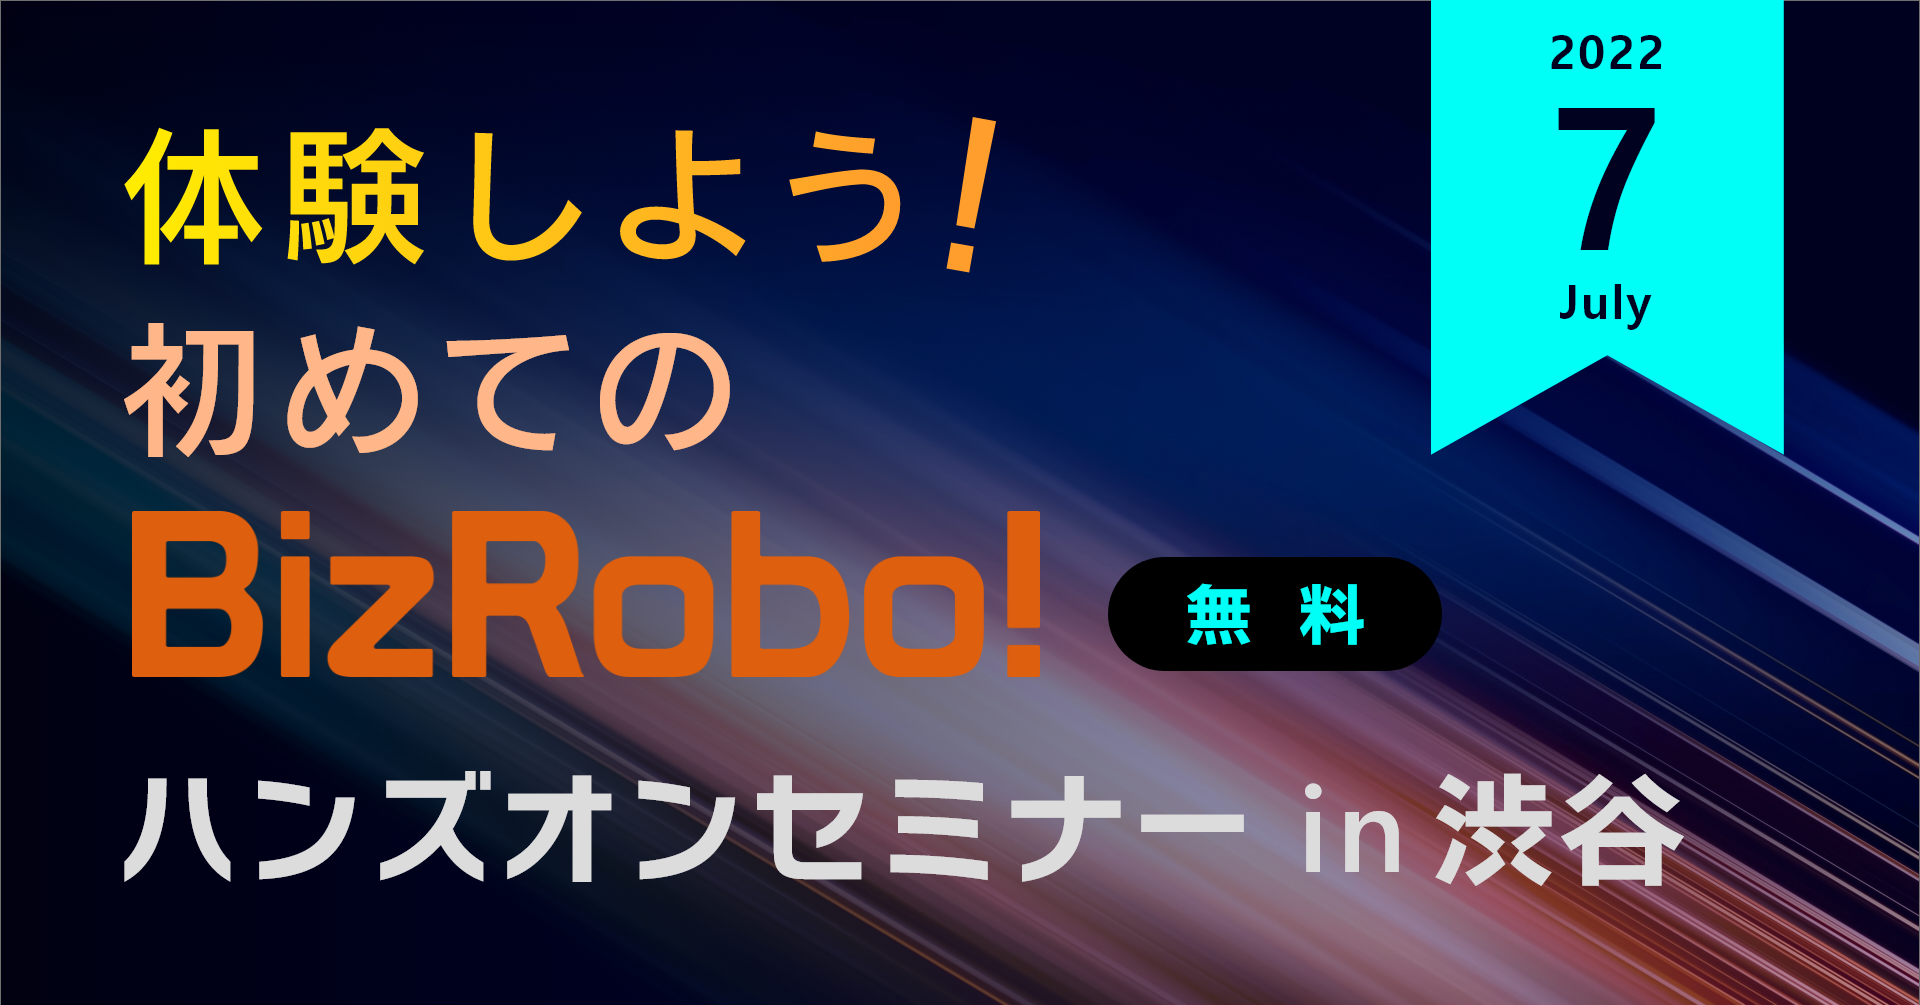 体験しよう！初めてのBizRobo! ハンズオンセミナー in 渋谷【7月】